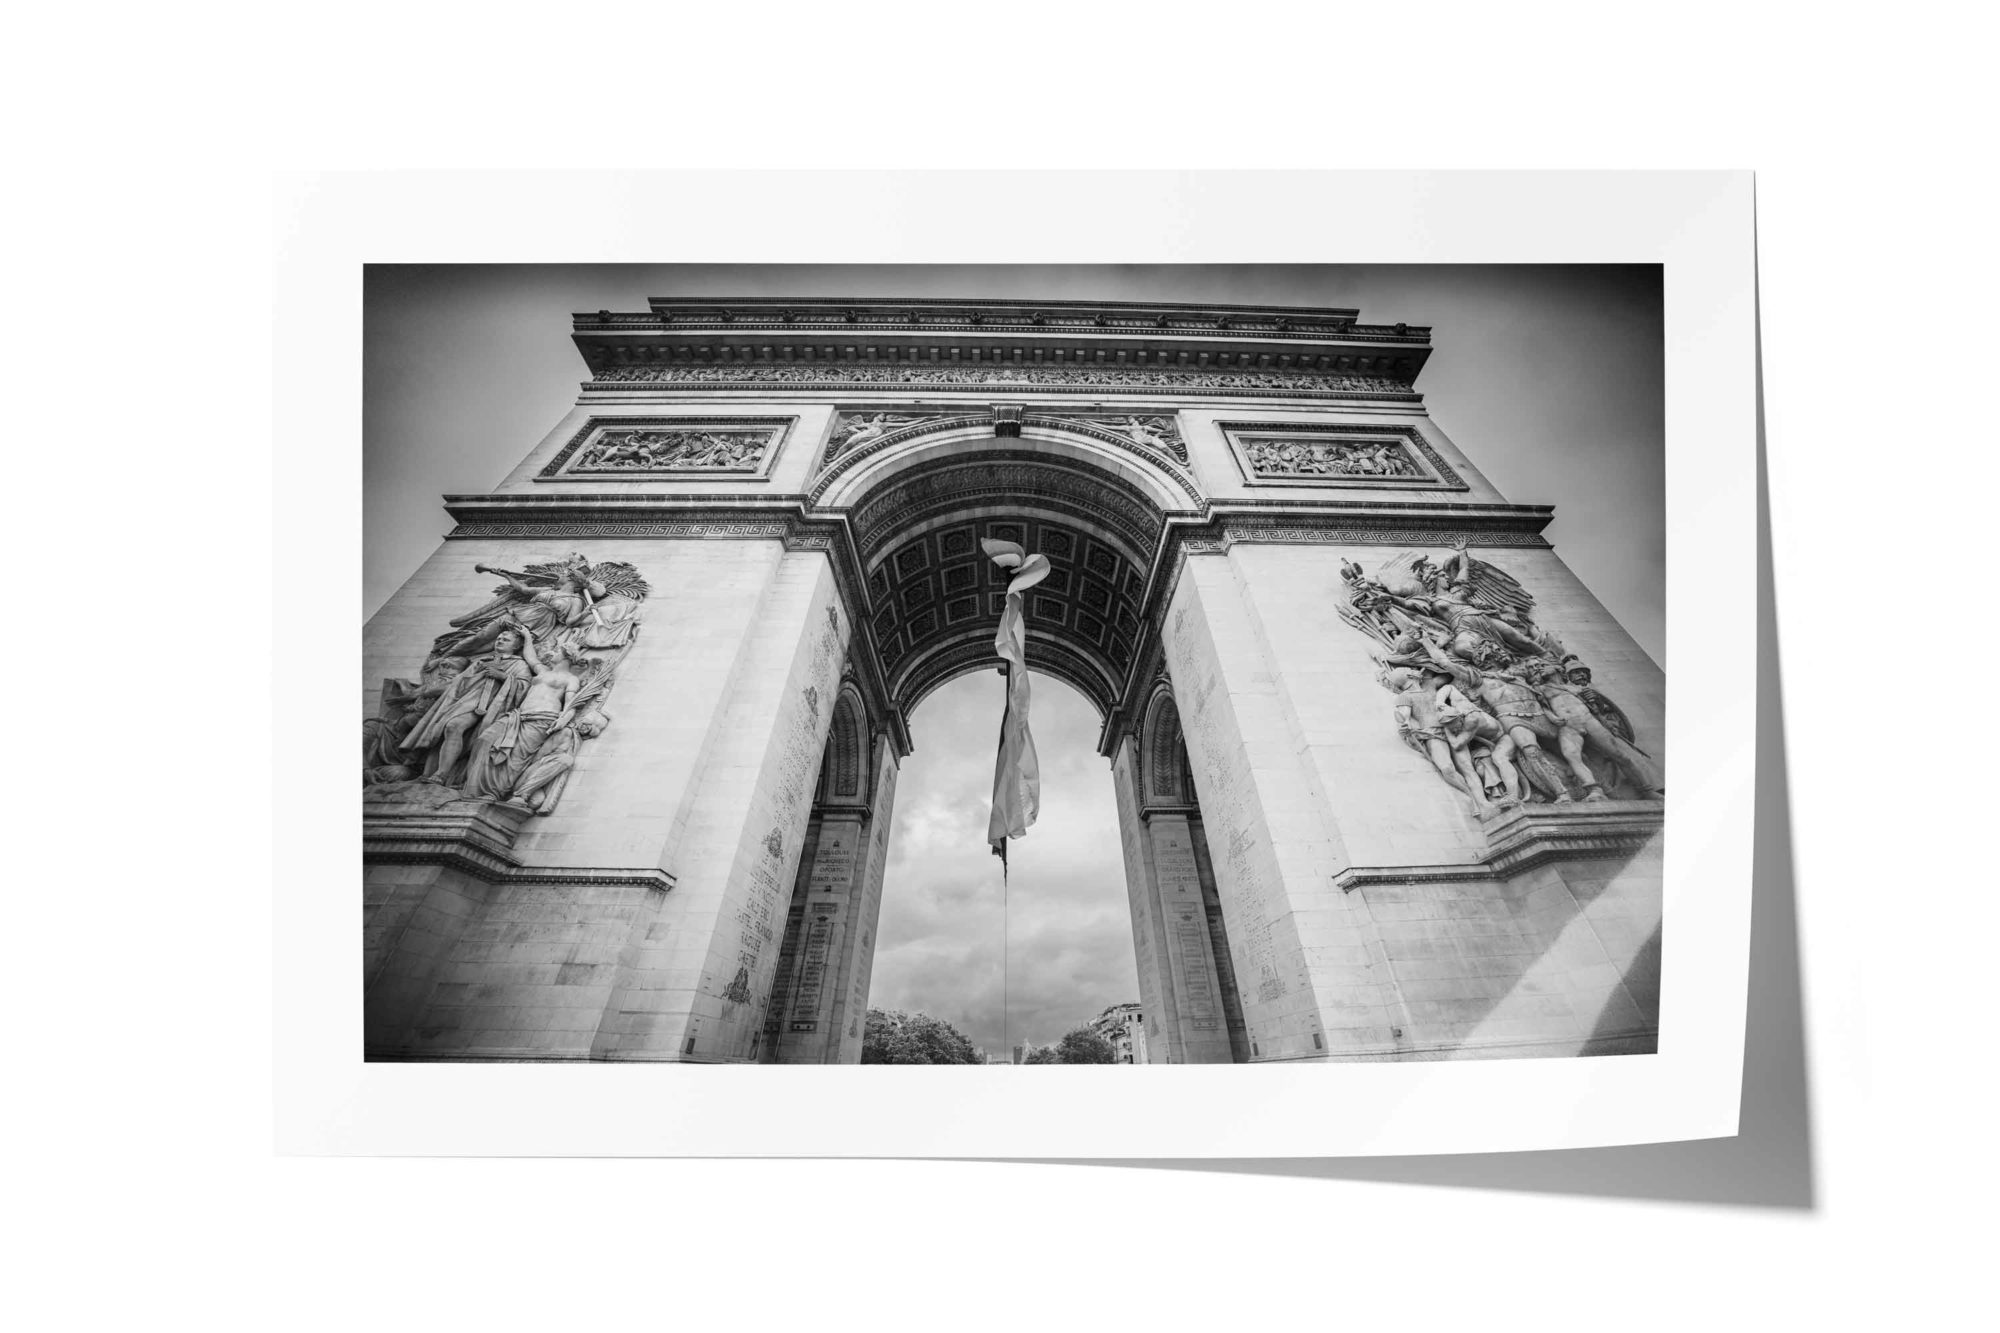 Champs-Élysées, Arc de Triomphe, Paris, France